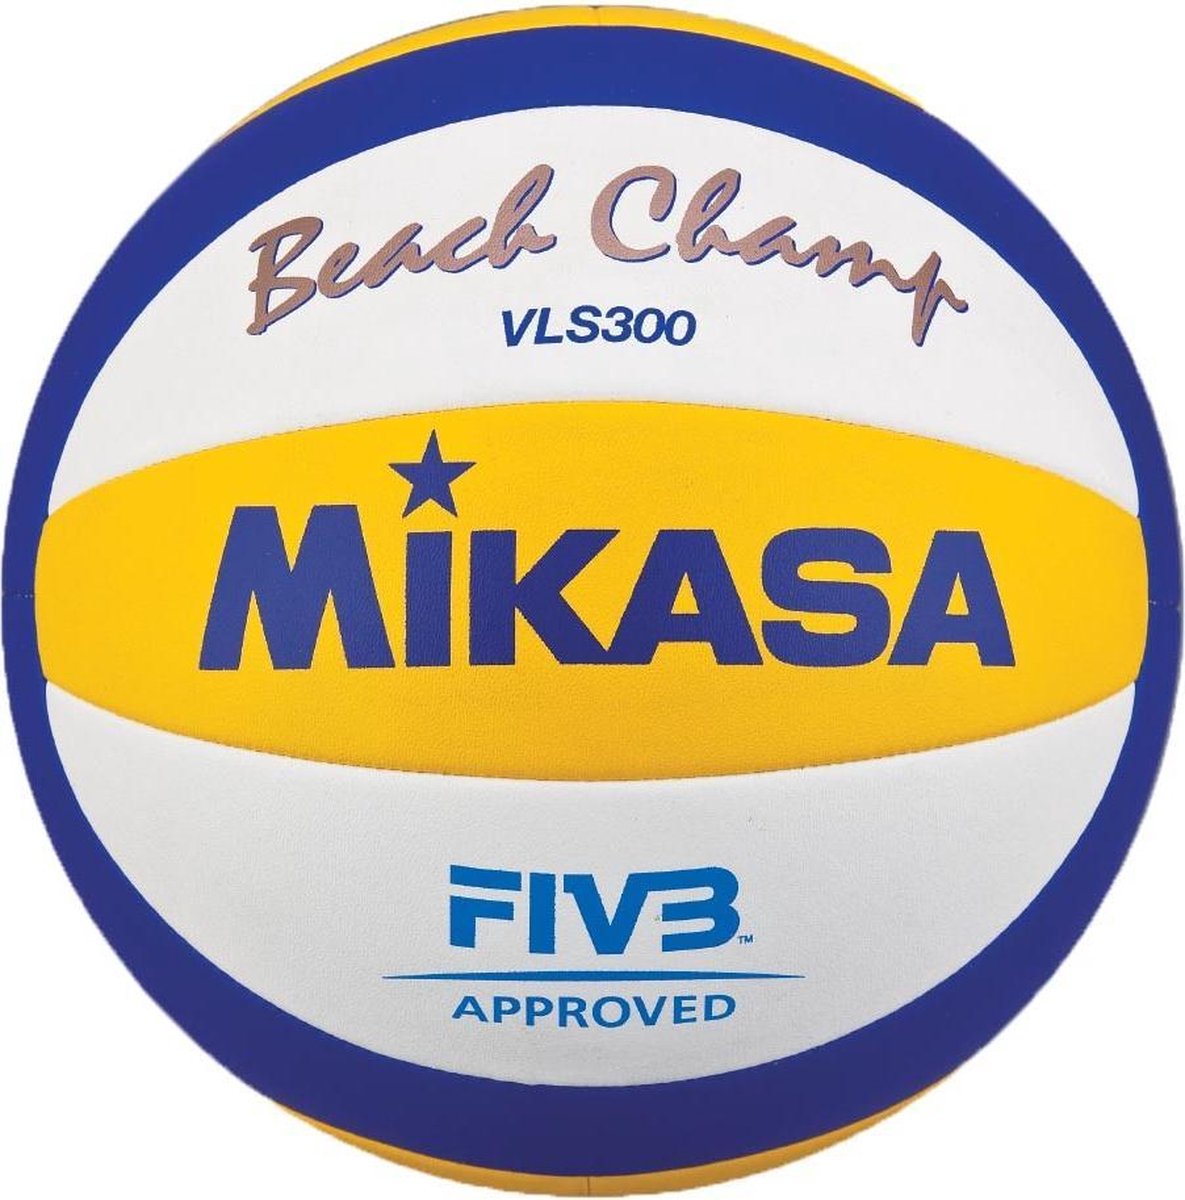 Beach-Volleyball BEACH CHAMP VLS 300 - Mikasa